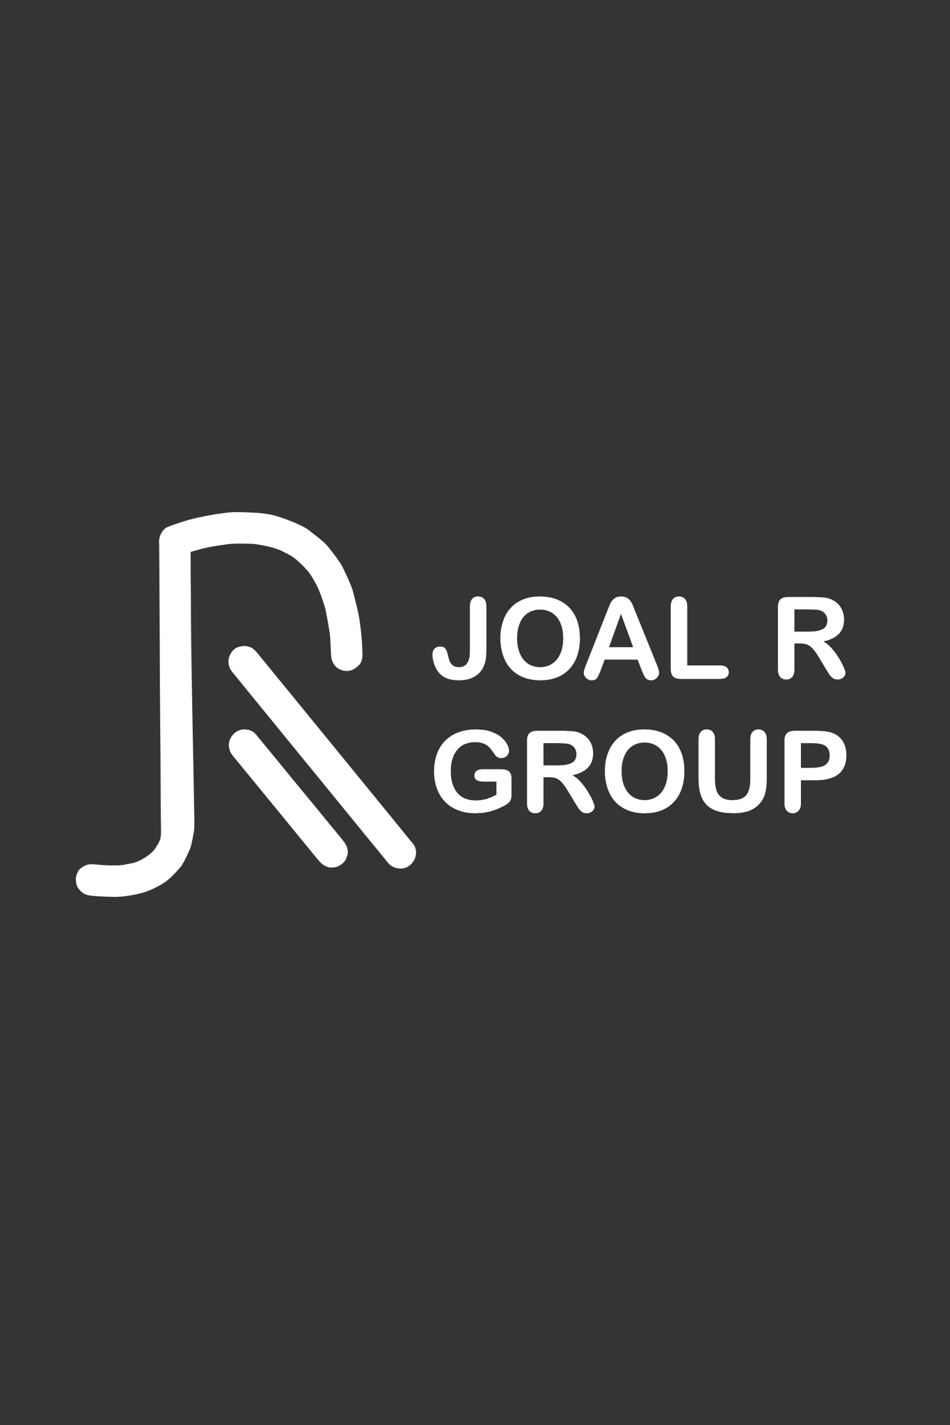 JOAL R GROUP headshot